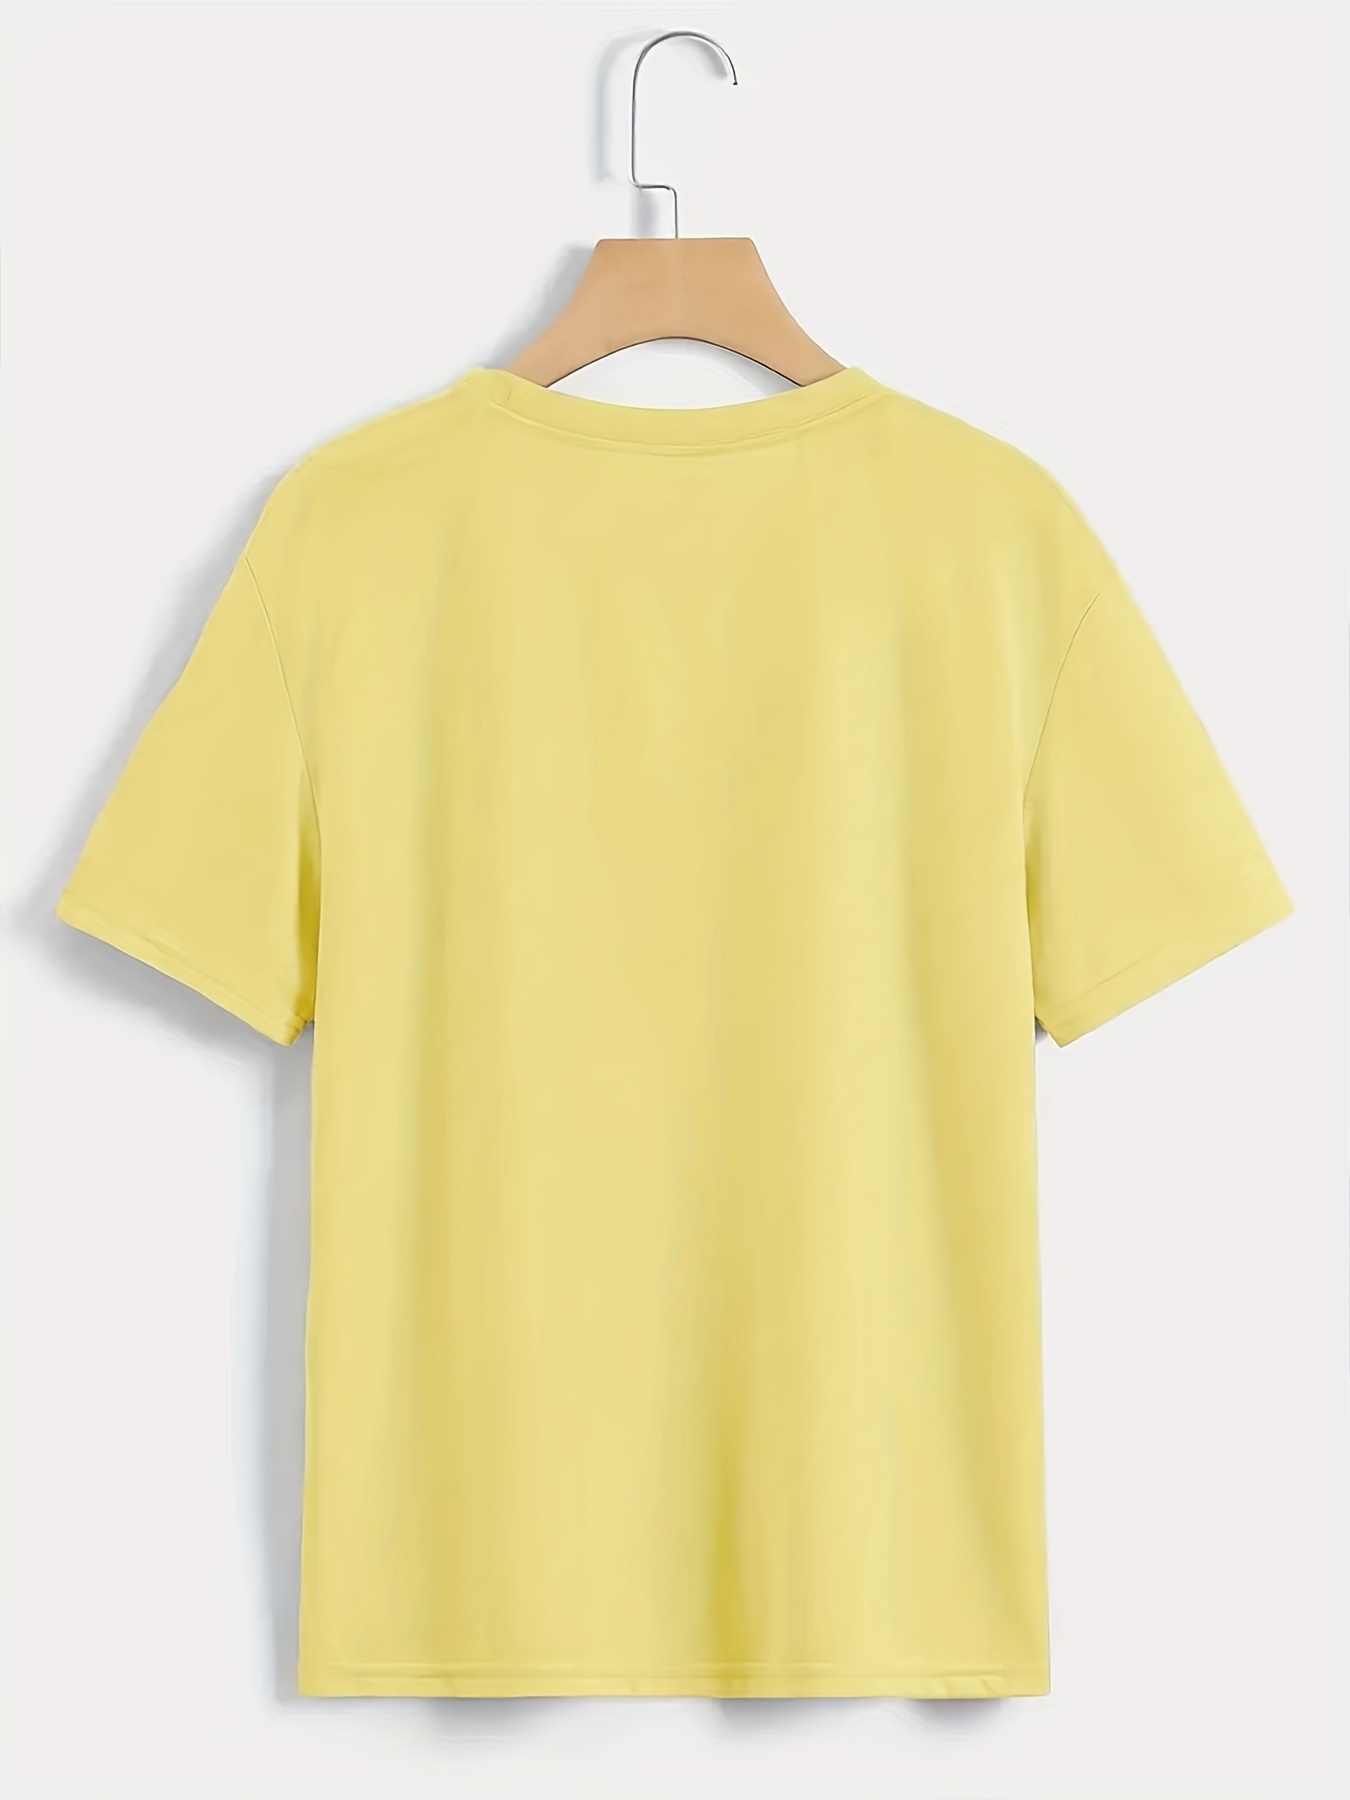 Camiseta Amarilla Mujer – Los Tres Elefantes Tienda Online